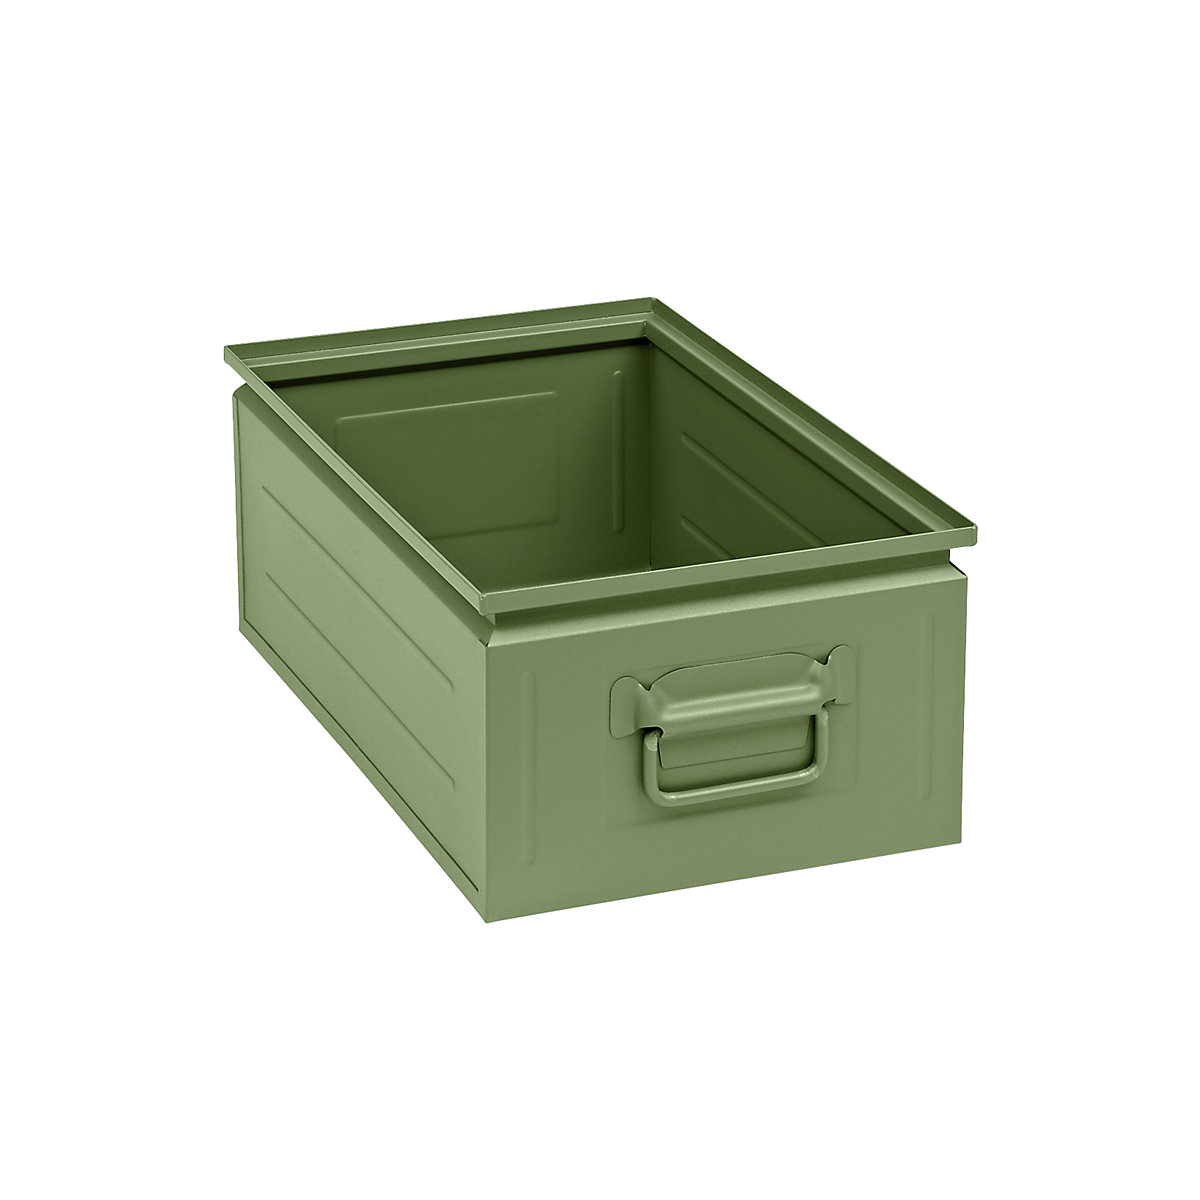 Caixa empilhável em chapa de aço, capacidade de aprox. 30 l, verde reseda RAL 6011